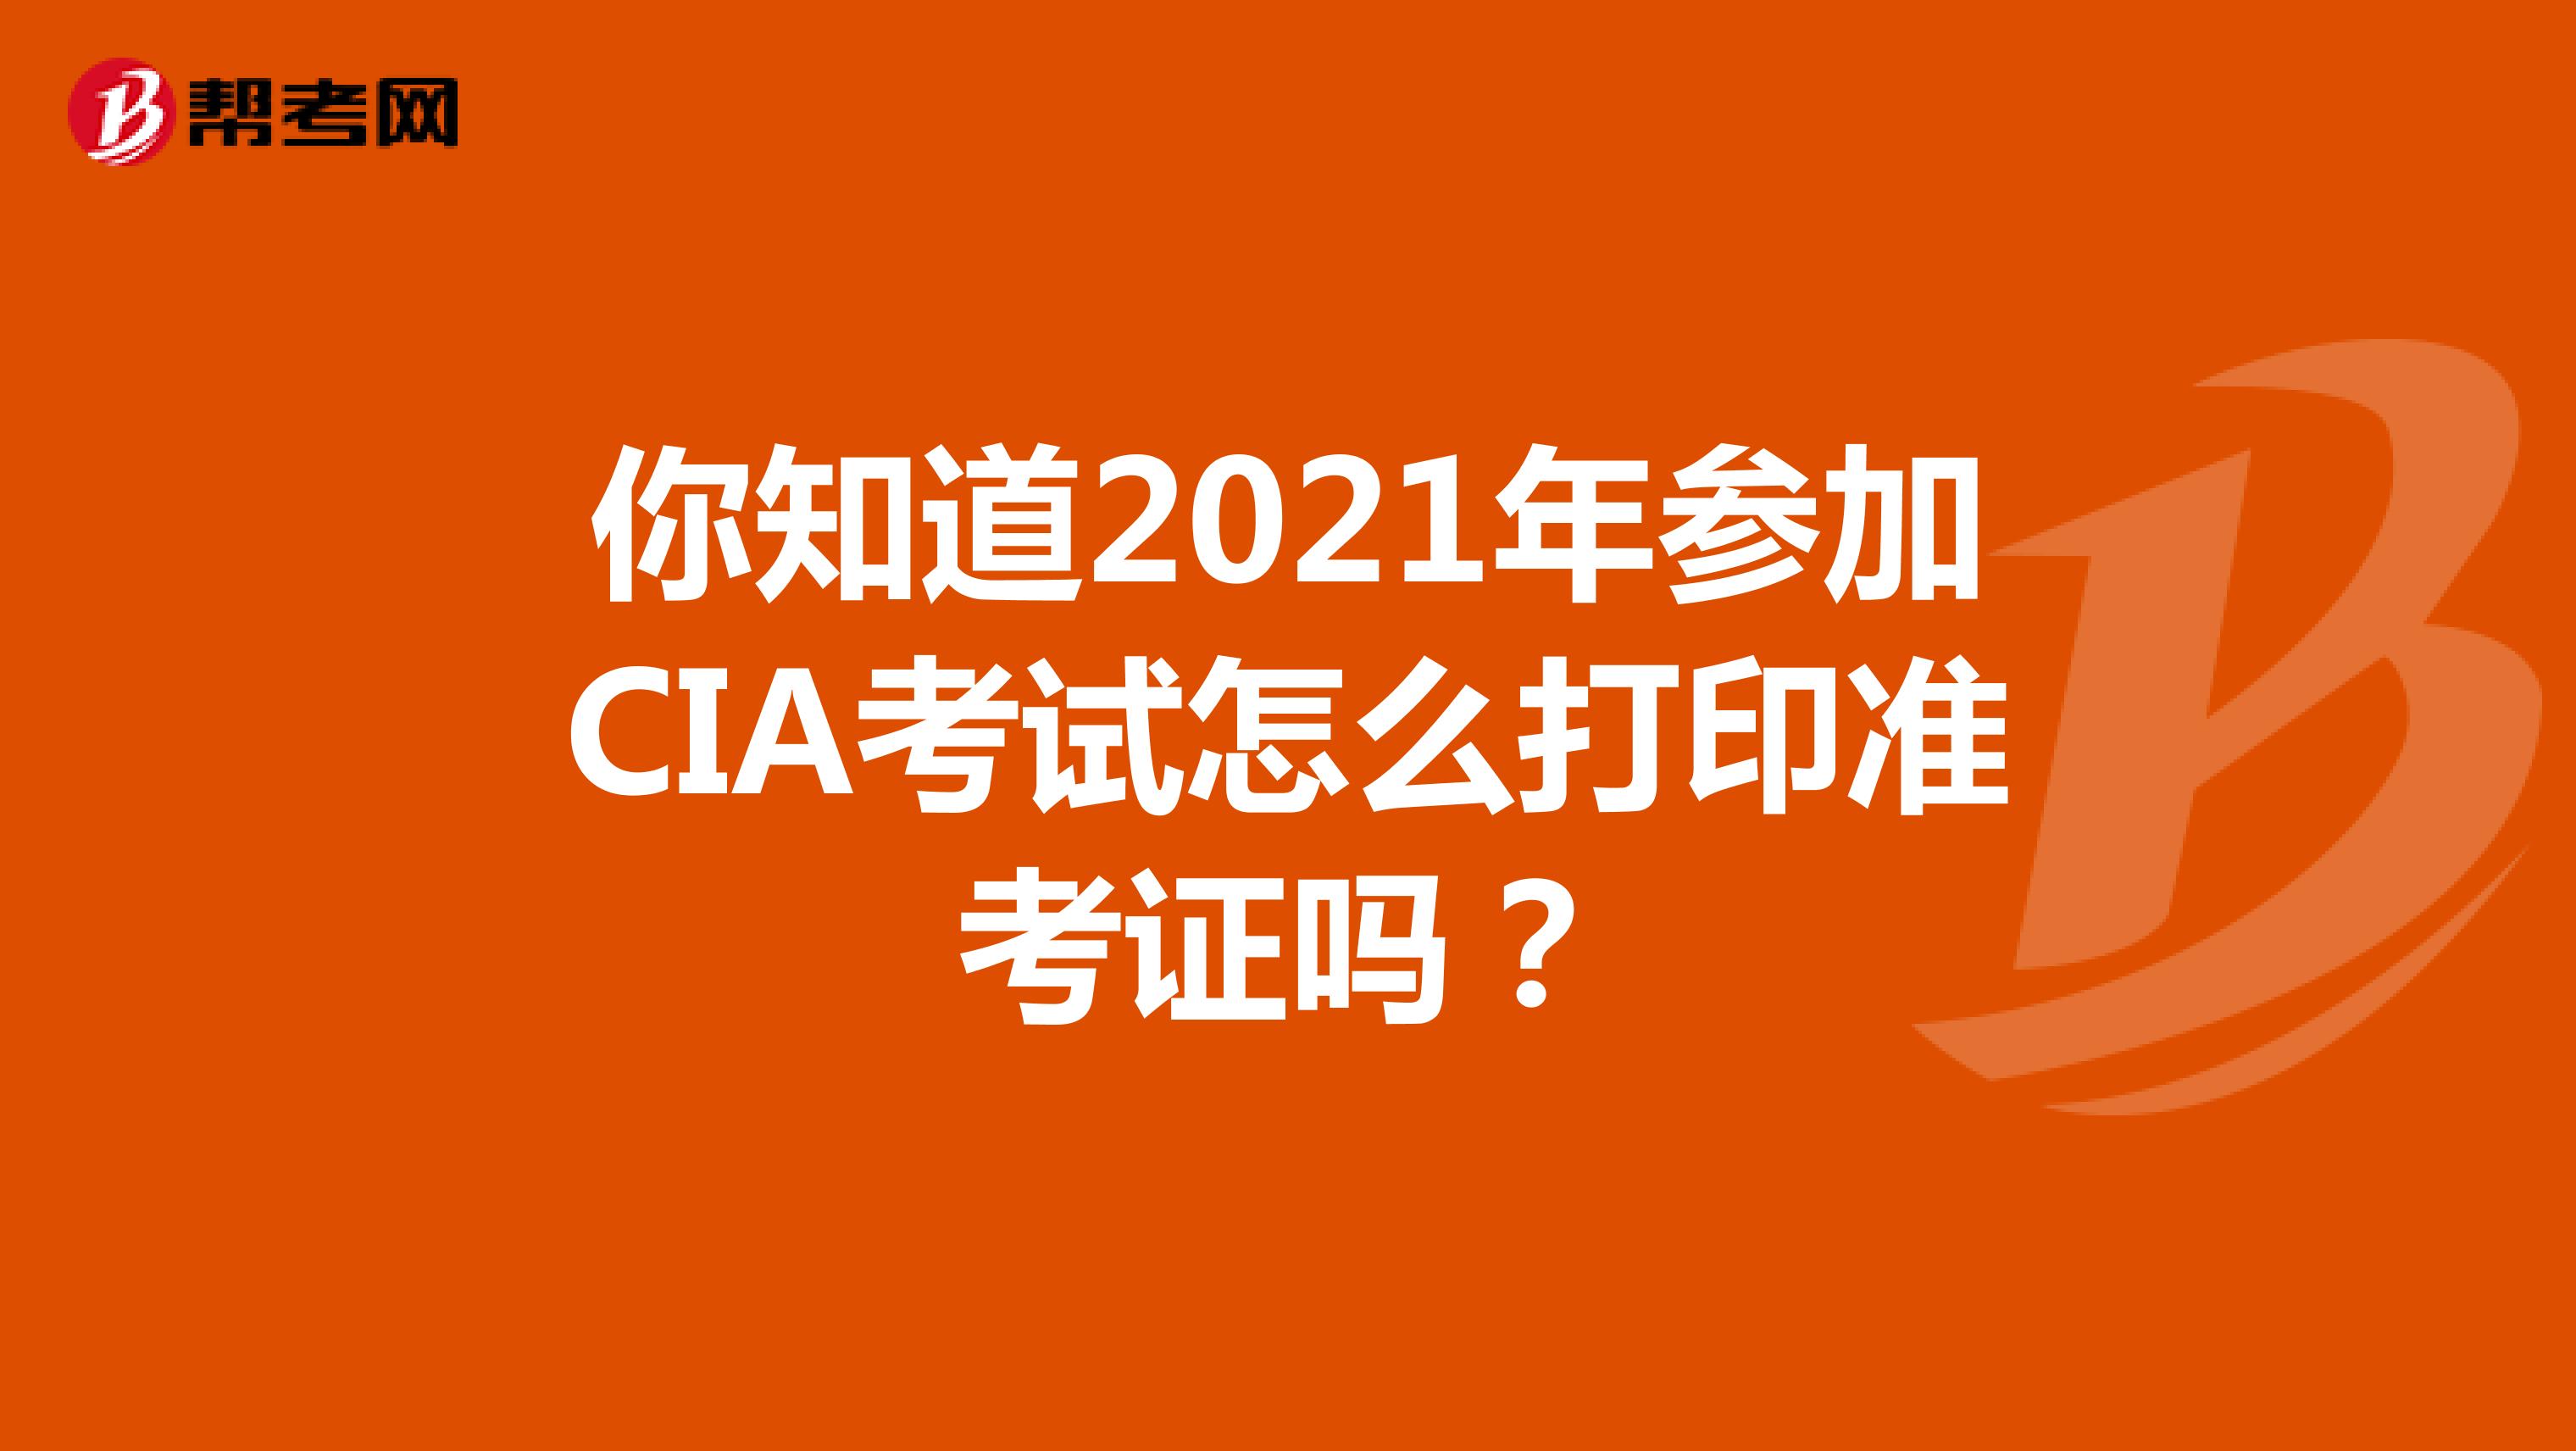 你知道2021年参加CIA考试怎么打印准考证吗？